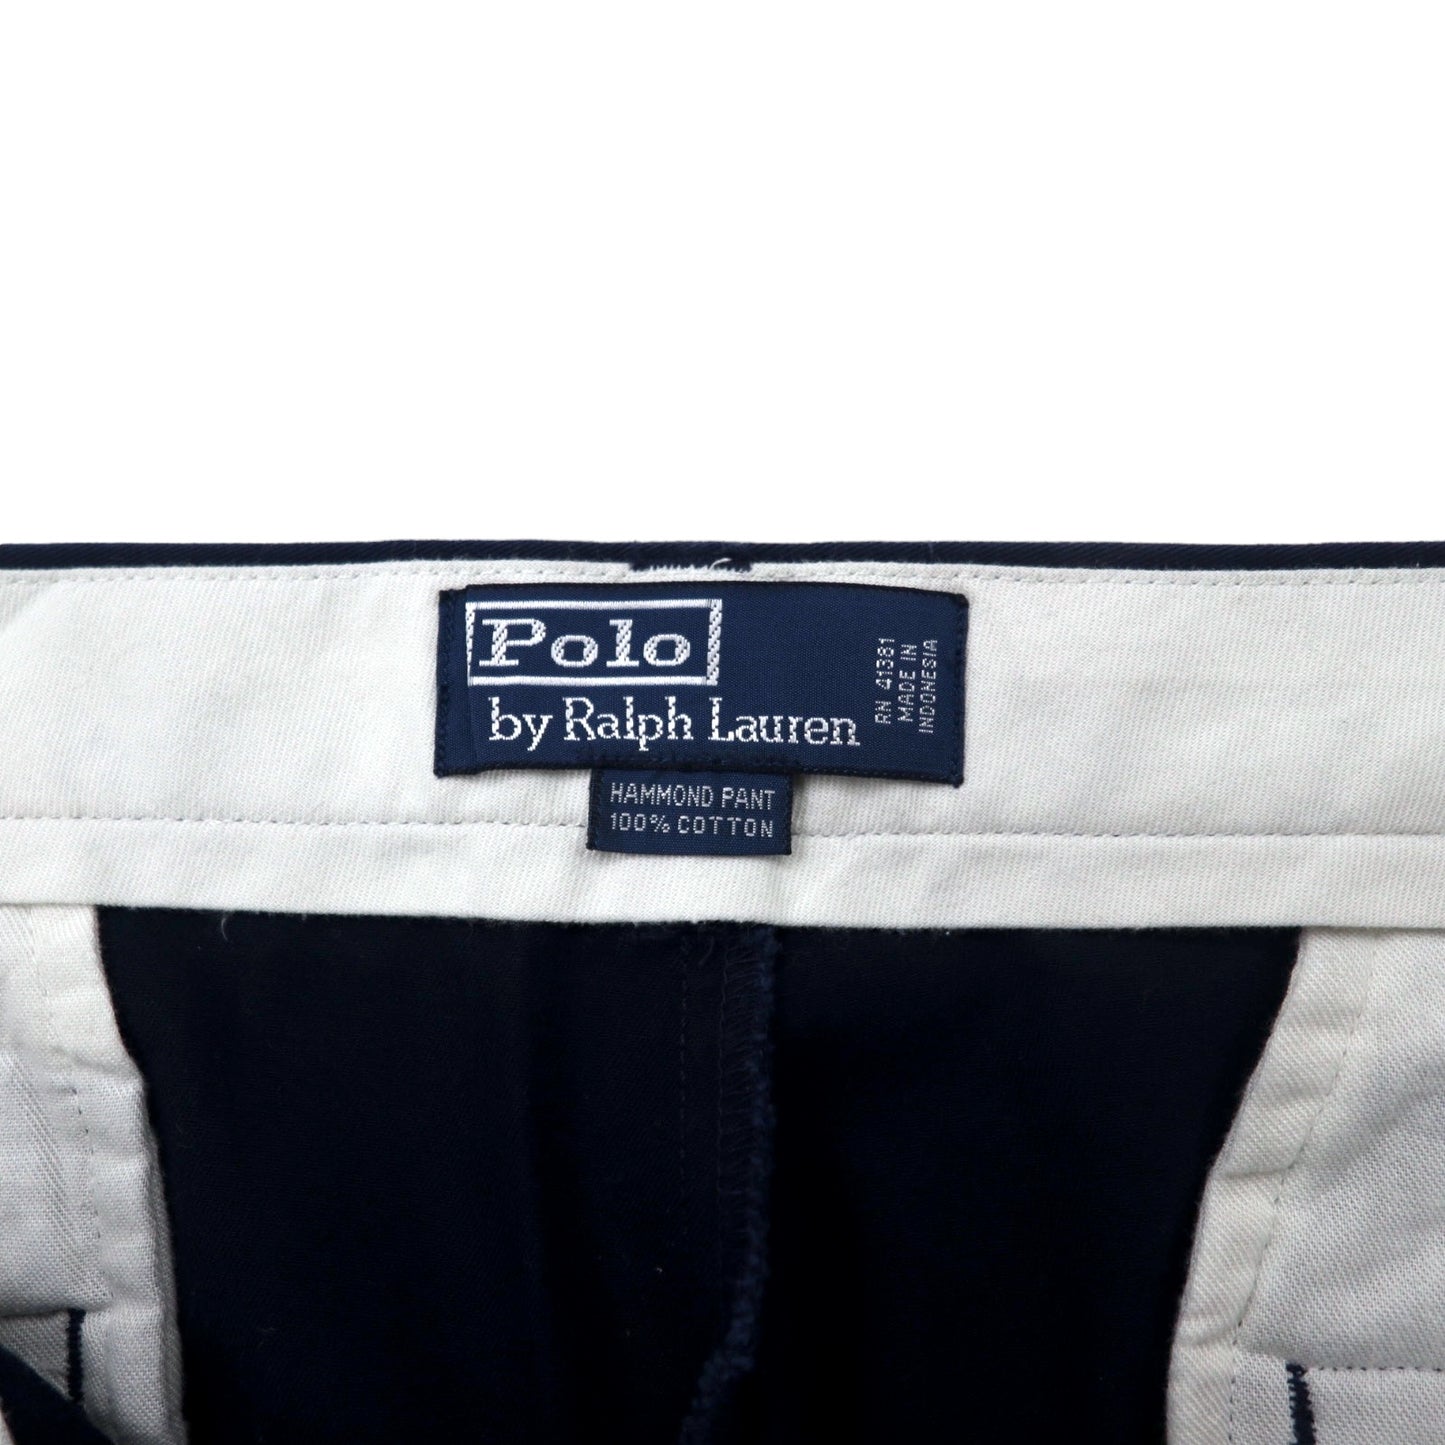 Polo by Ralph Lauren 2タック ワイド チノパンツ 36 ネイビー コットン HAMMOND PANT